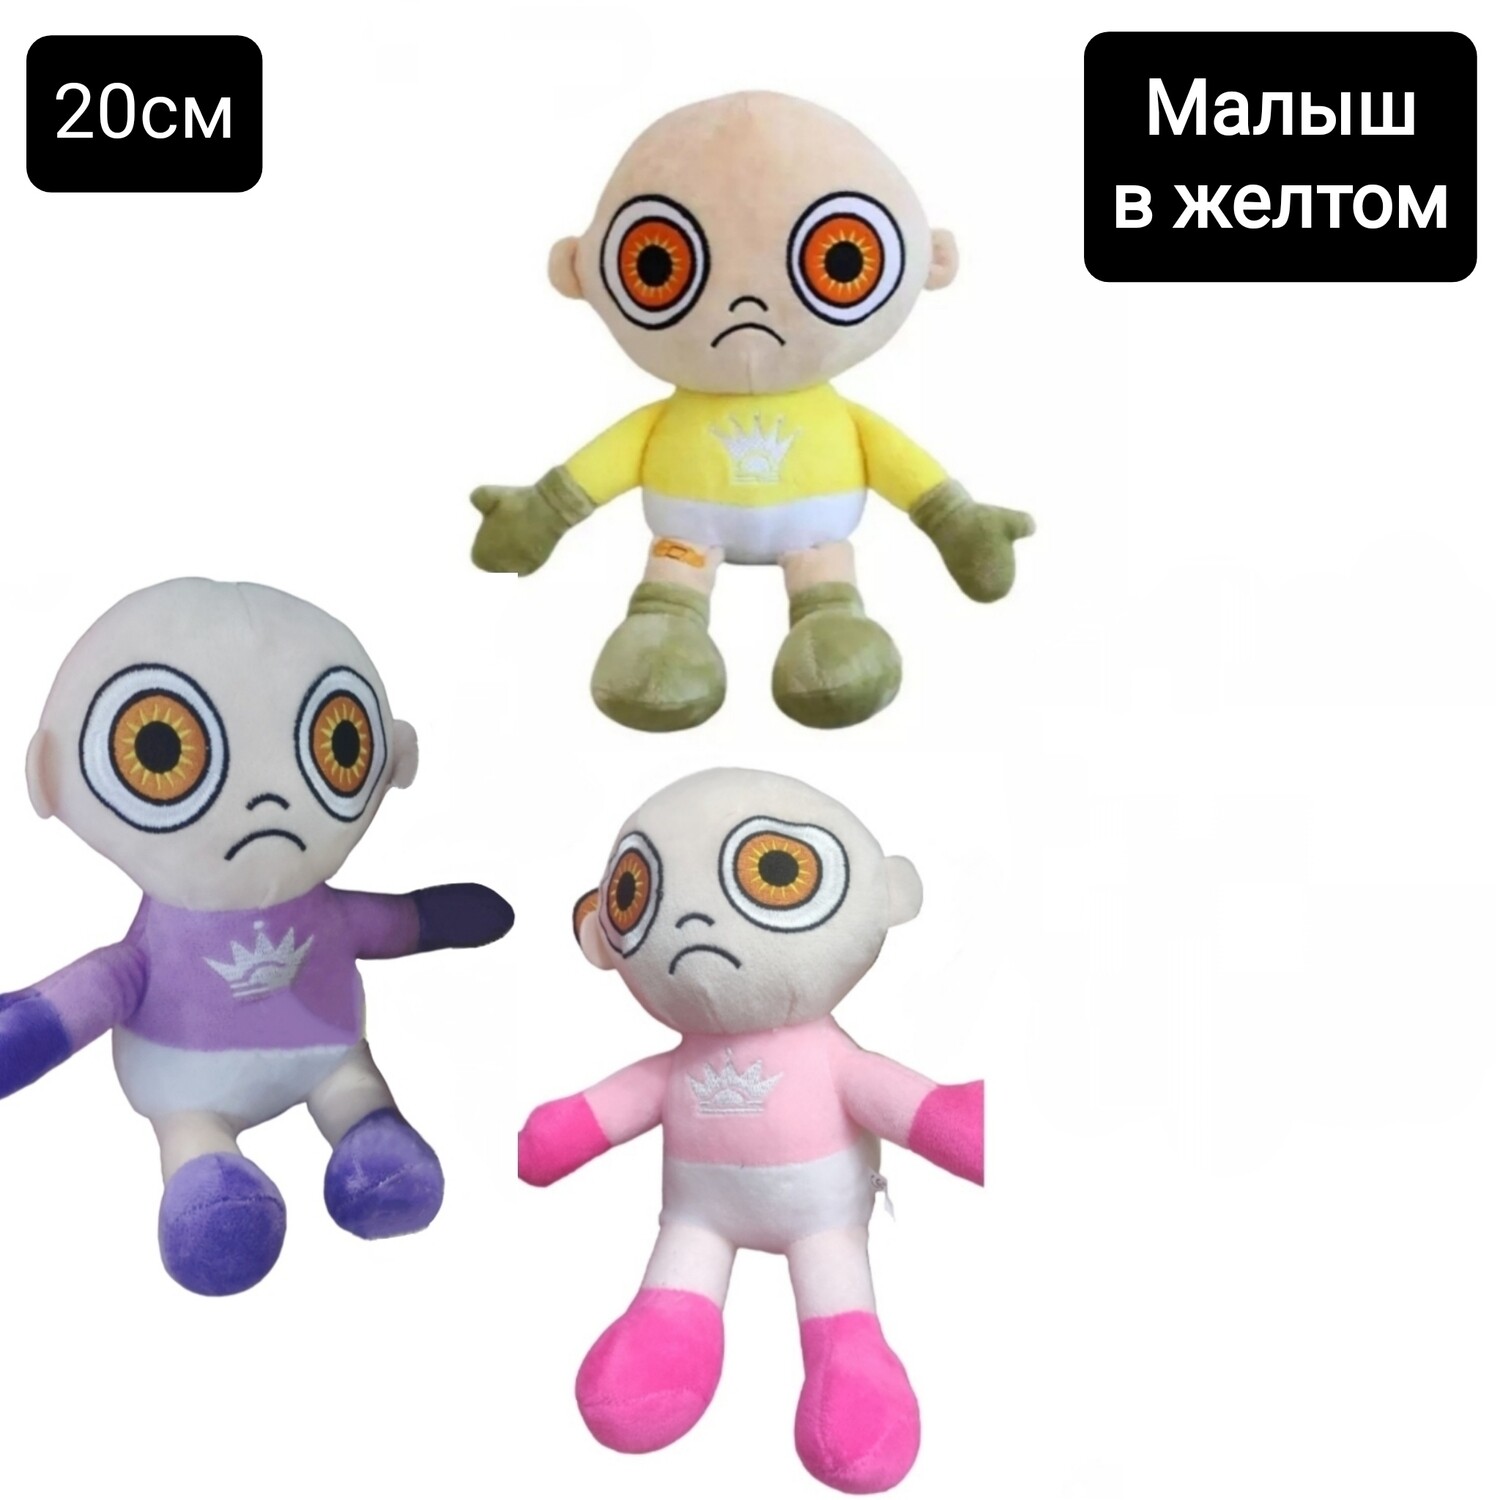 Мягкая игрушка брелок "Малыш в жёлтом, розовом, фиолетовом - The Baby In Yellow" а ассортименте 20см